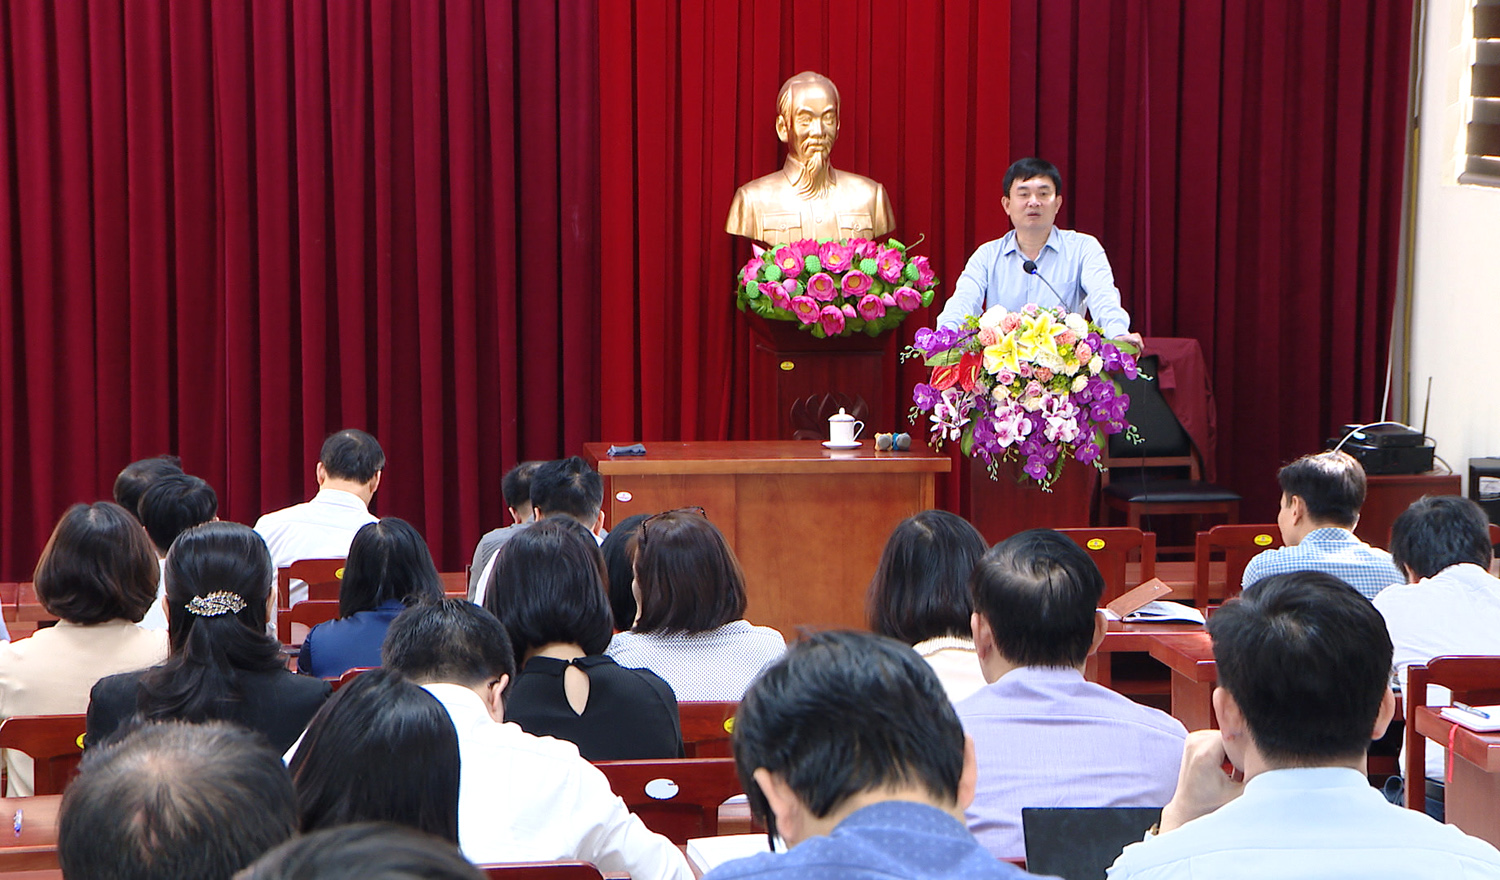 Đồng chí Ngô Hoàng Ngân, Phó Bí thư Thường trực Tỉnh ủy trao đổi với các học viên đang theo học tại Trường Đào tạo cán bộ Nguyễn Văn Cừ.